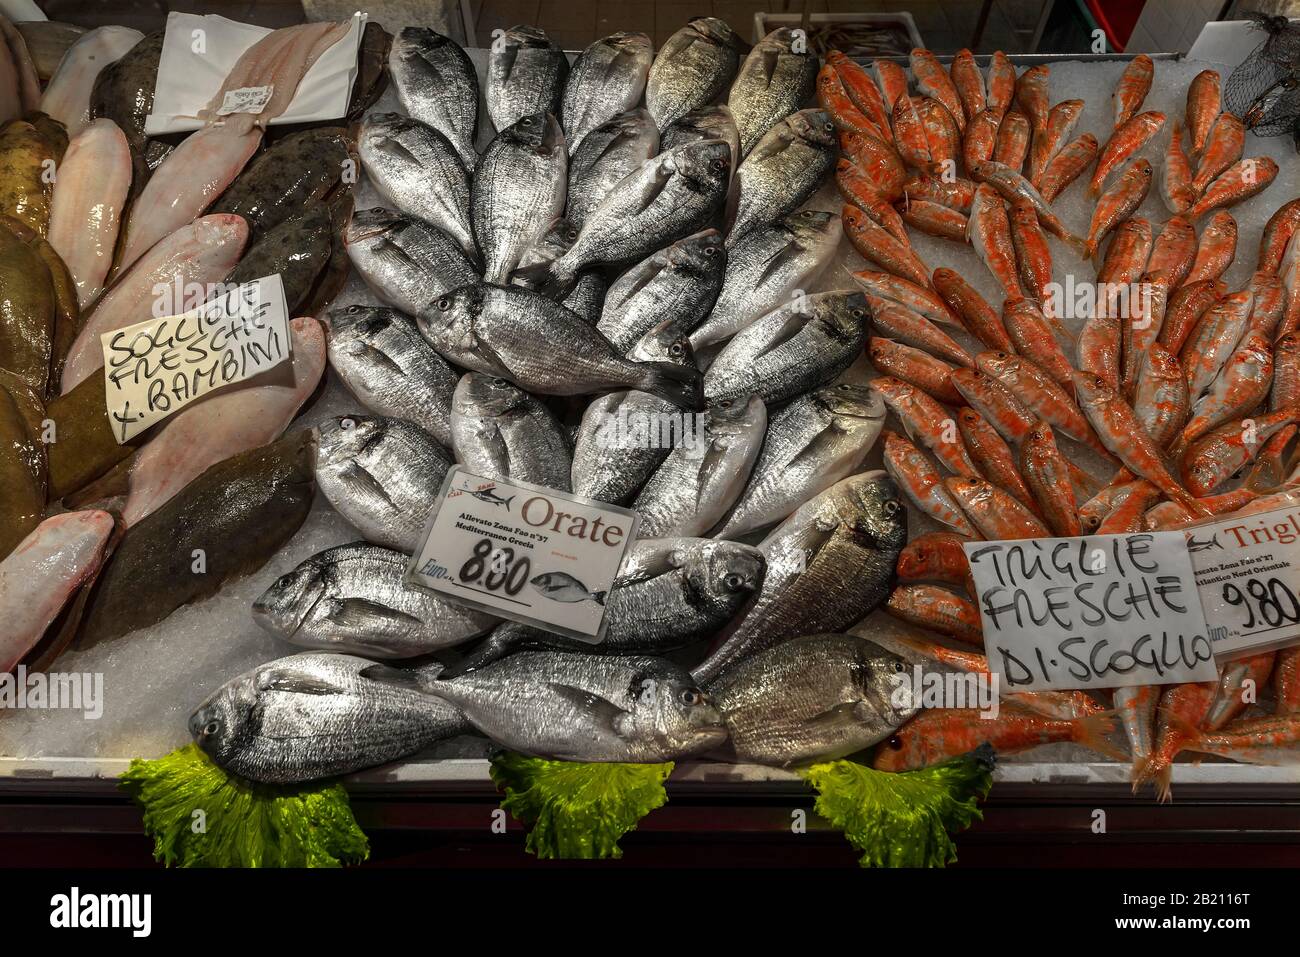 Orate fresche (Bramidae) triglie destre (Mugilidae), sinistra sogliola (Solea solea) su ghiaccio, mercato del pesce Venezia, Veneto, Italia Foto Stock